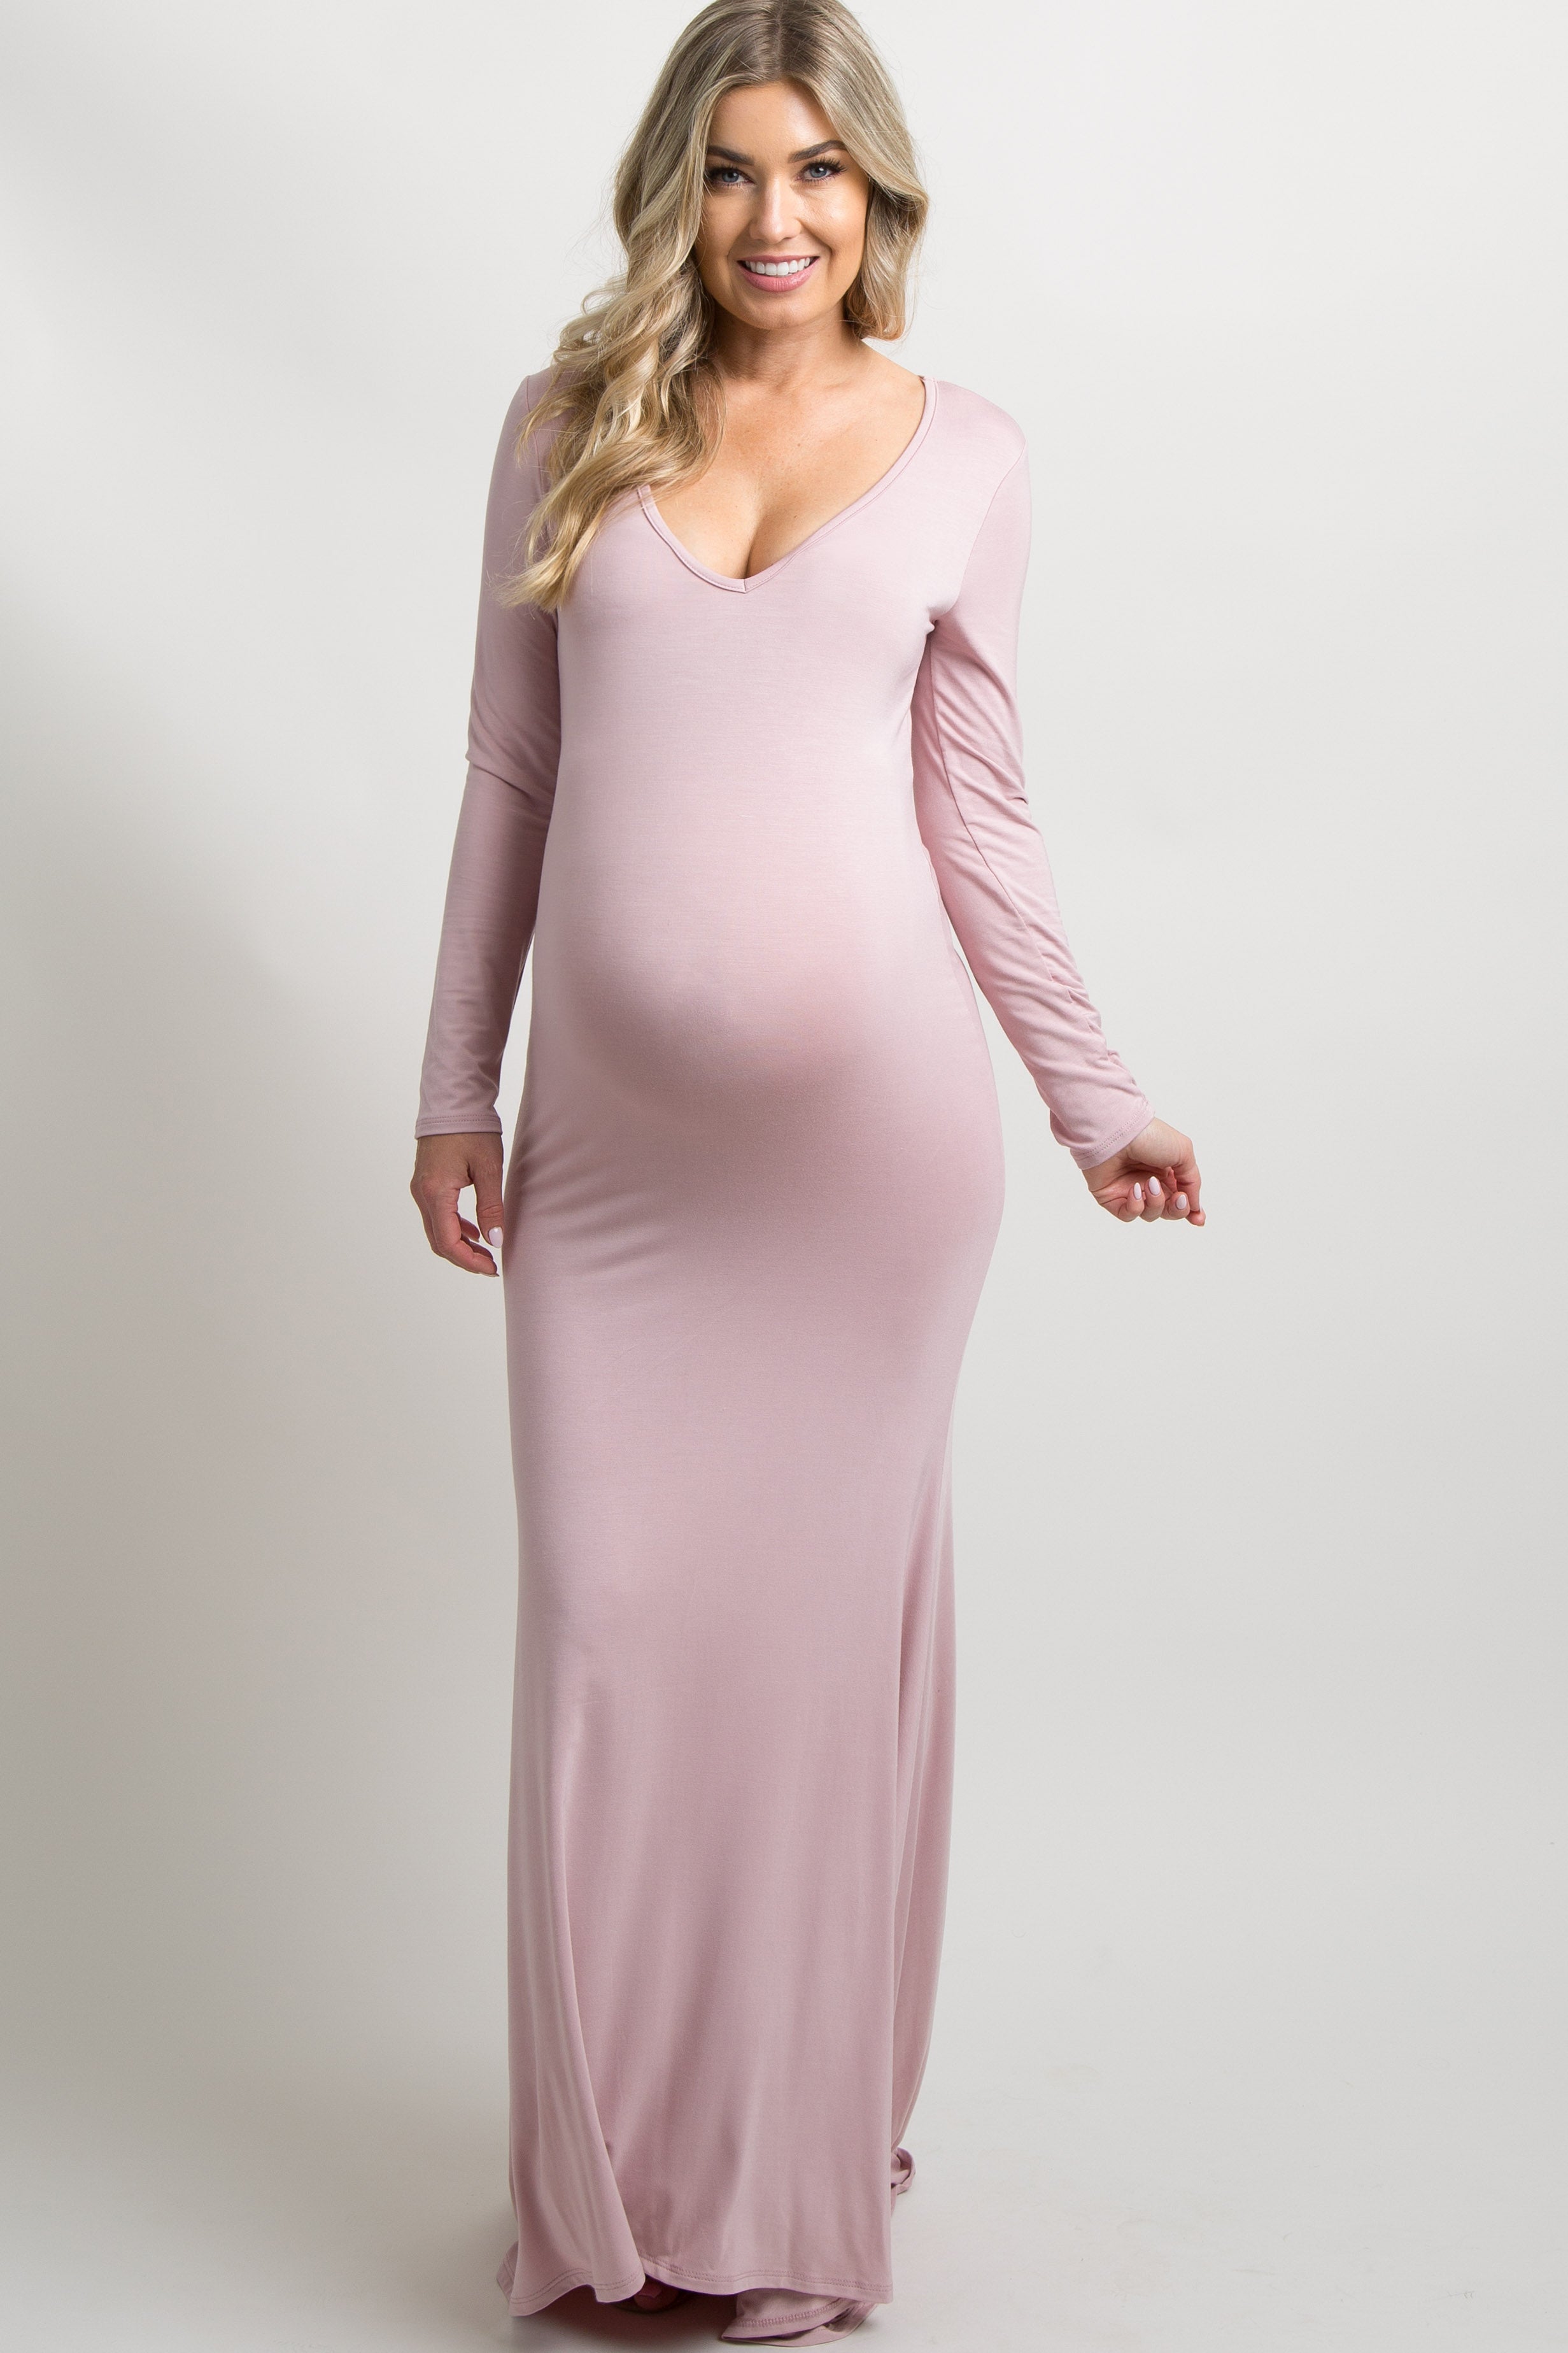 pink blush maternity dress